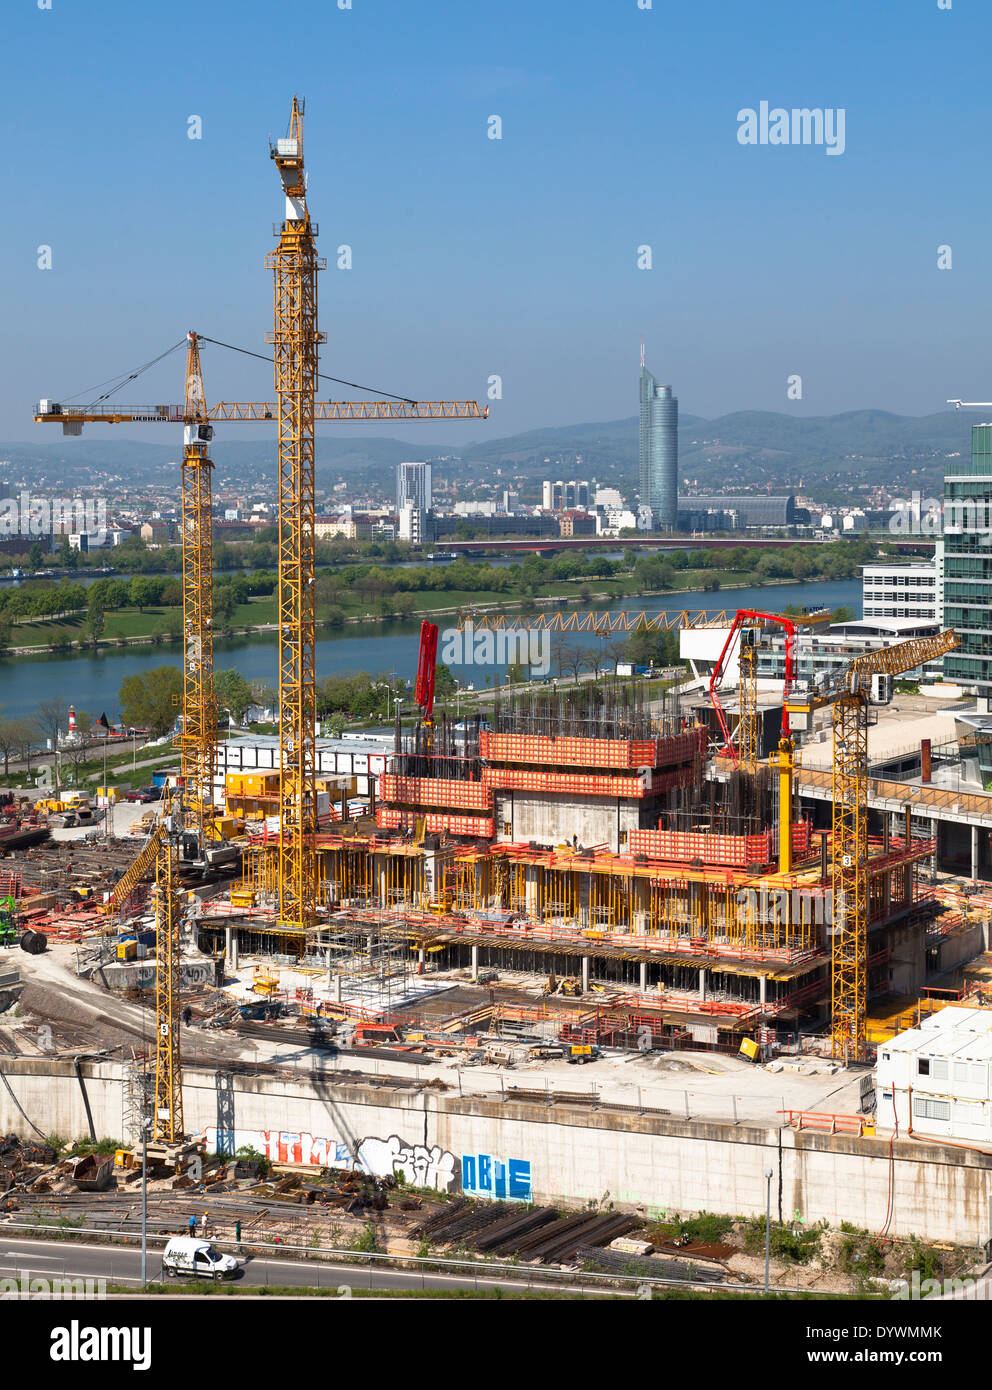 Site de construction DC Tours, Vienne, Autriche Banque D'Images